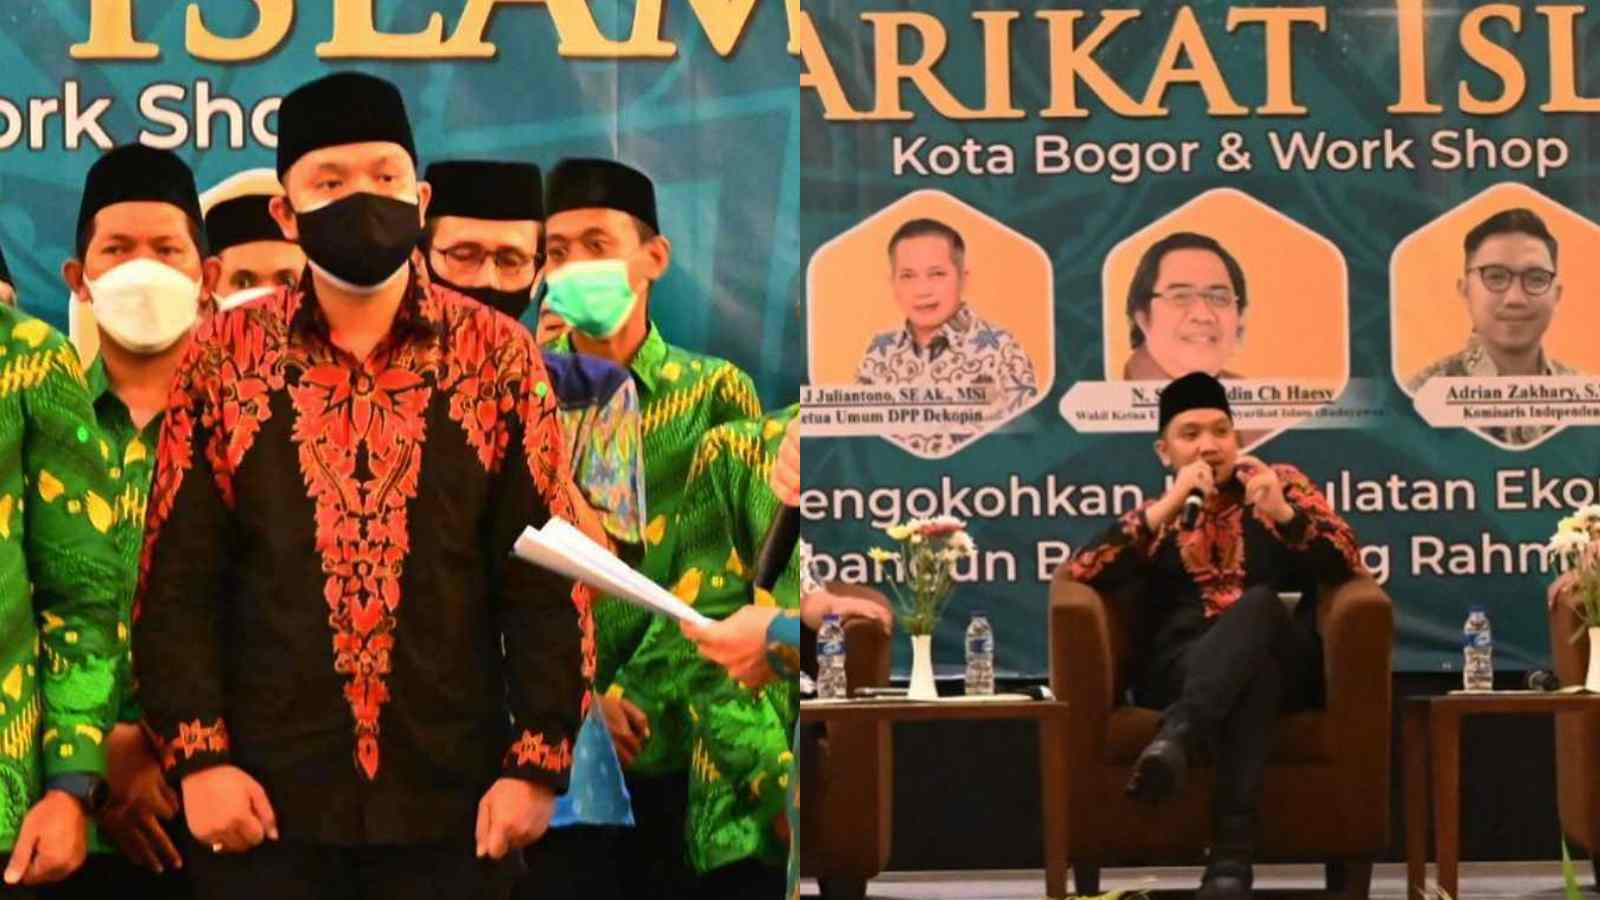 Komisaris Milenial PTPN VIII Adrian Zakhary Mendukung Momentum Kebangkitan Syarikat Islam Pasca Pelantikan DPC Kota Bogor